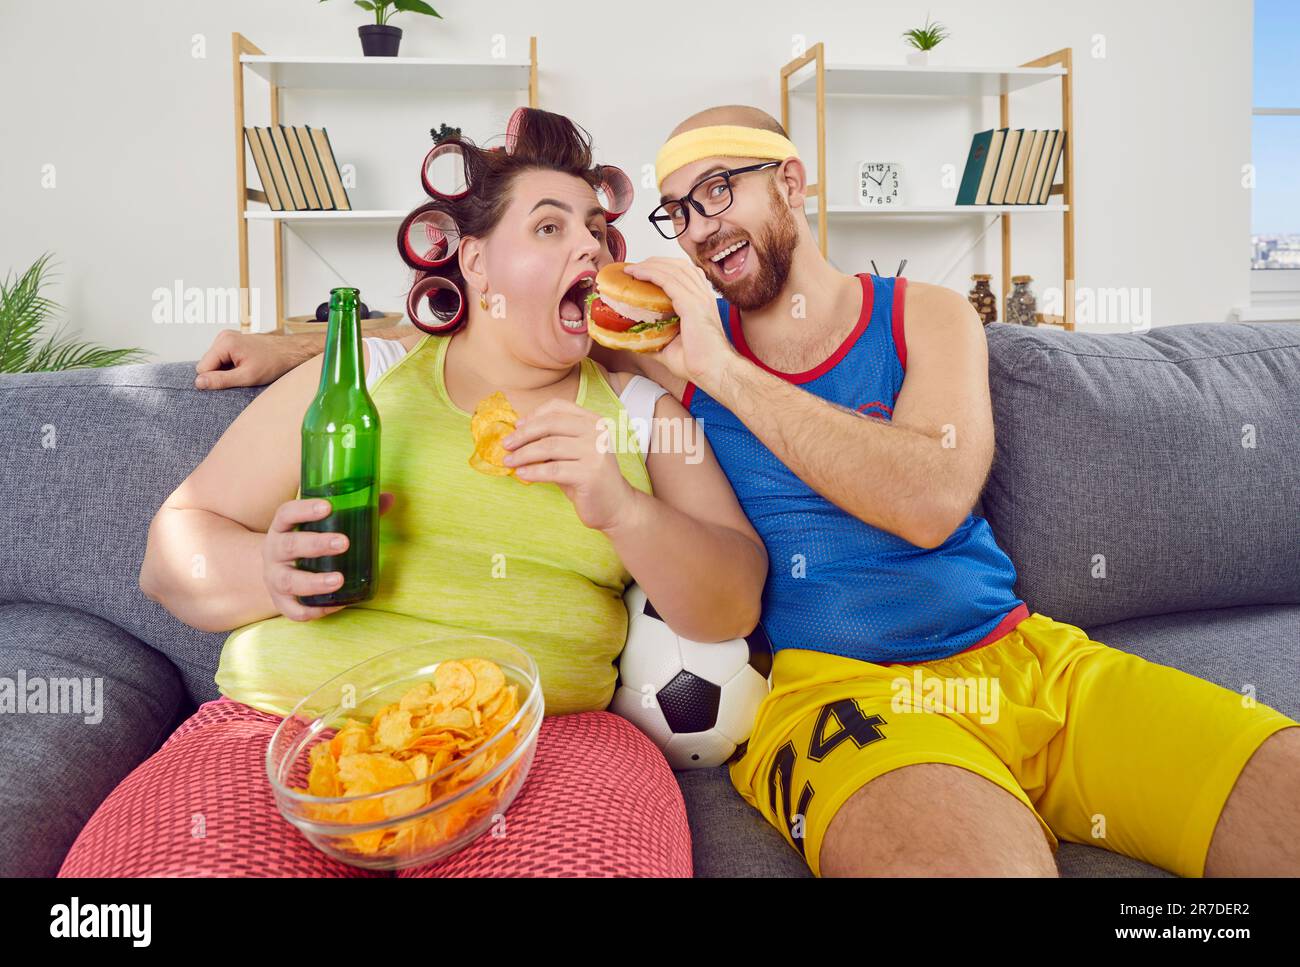 Divertente uomo e donna grassa che hanno cheat giorno, seduta sul divano e mangiare cibo malsano Foto Stock